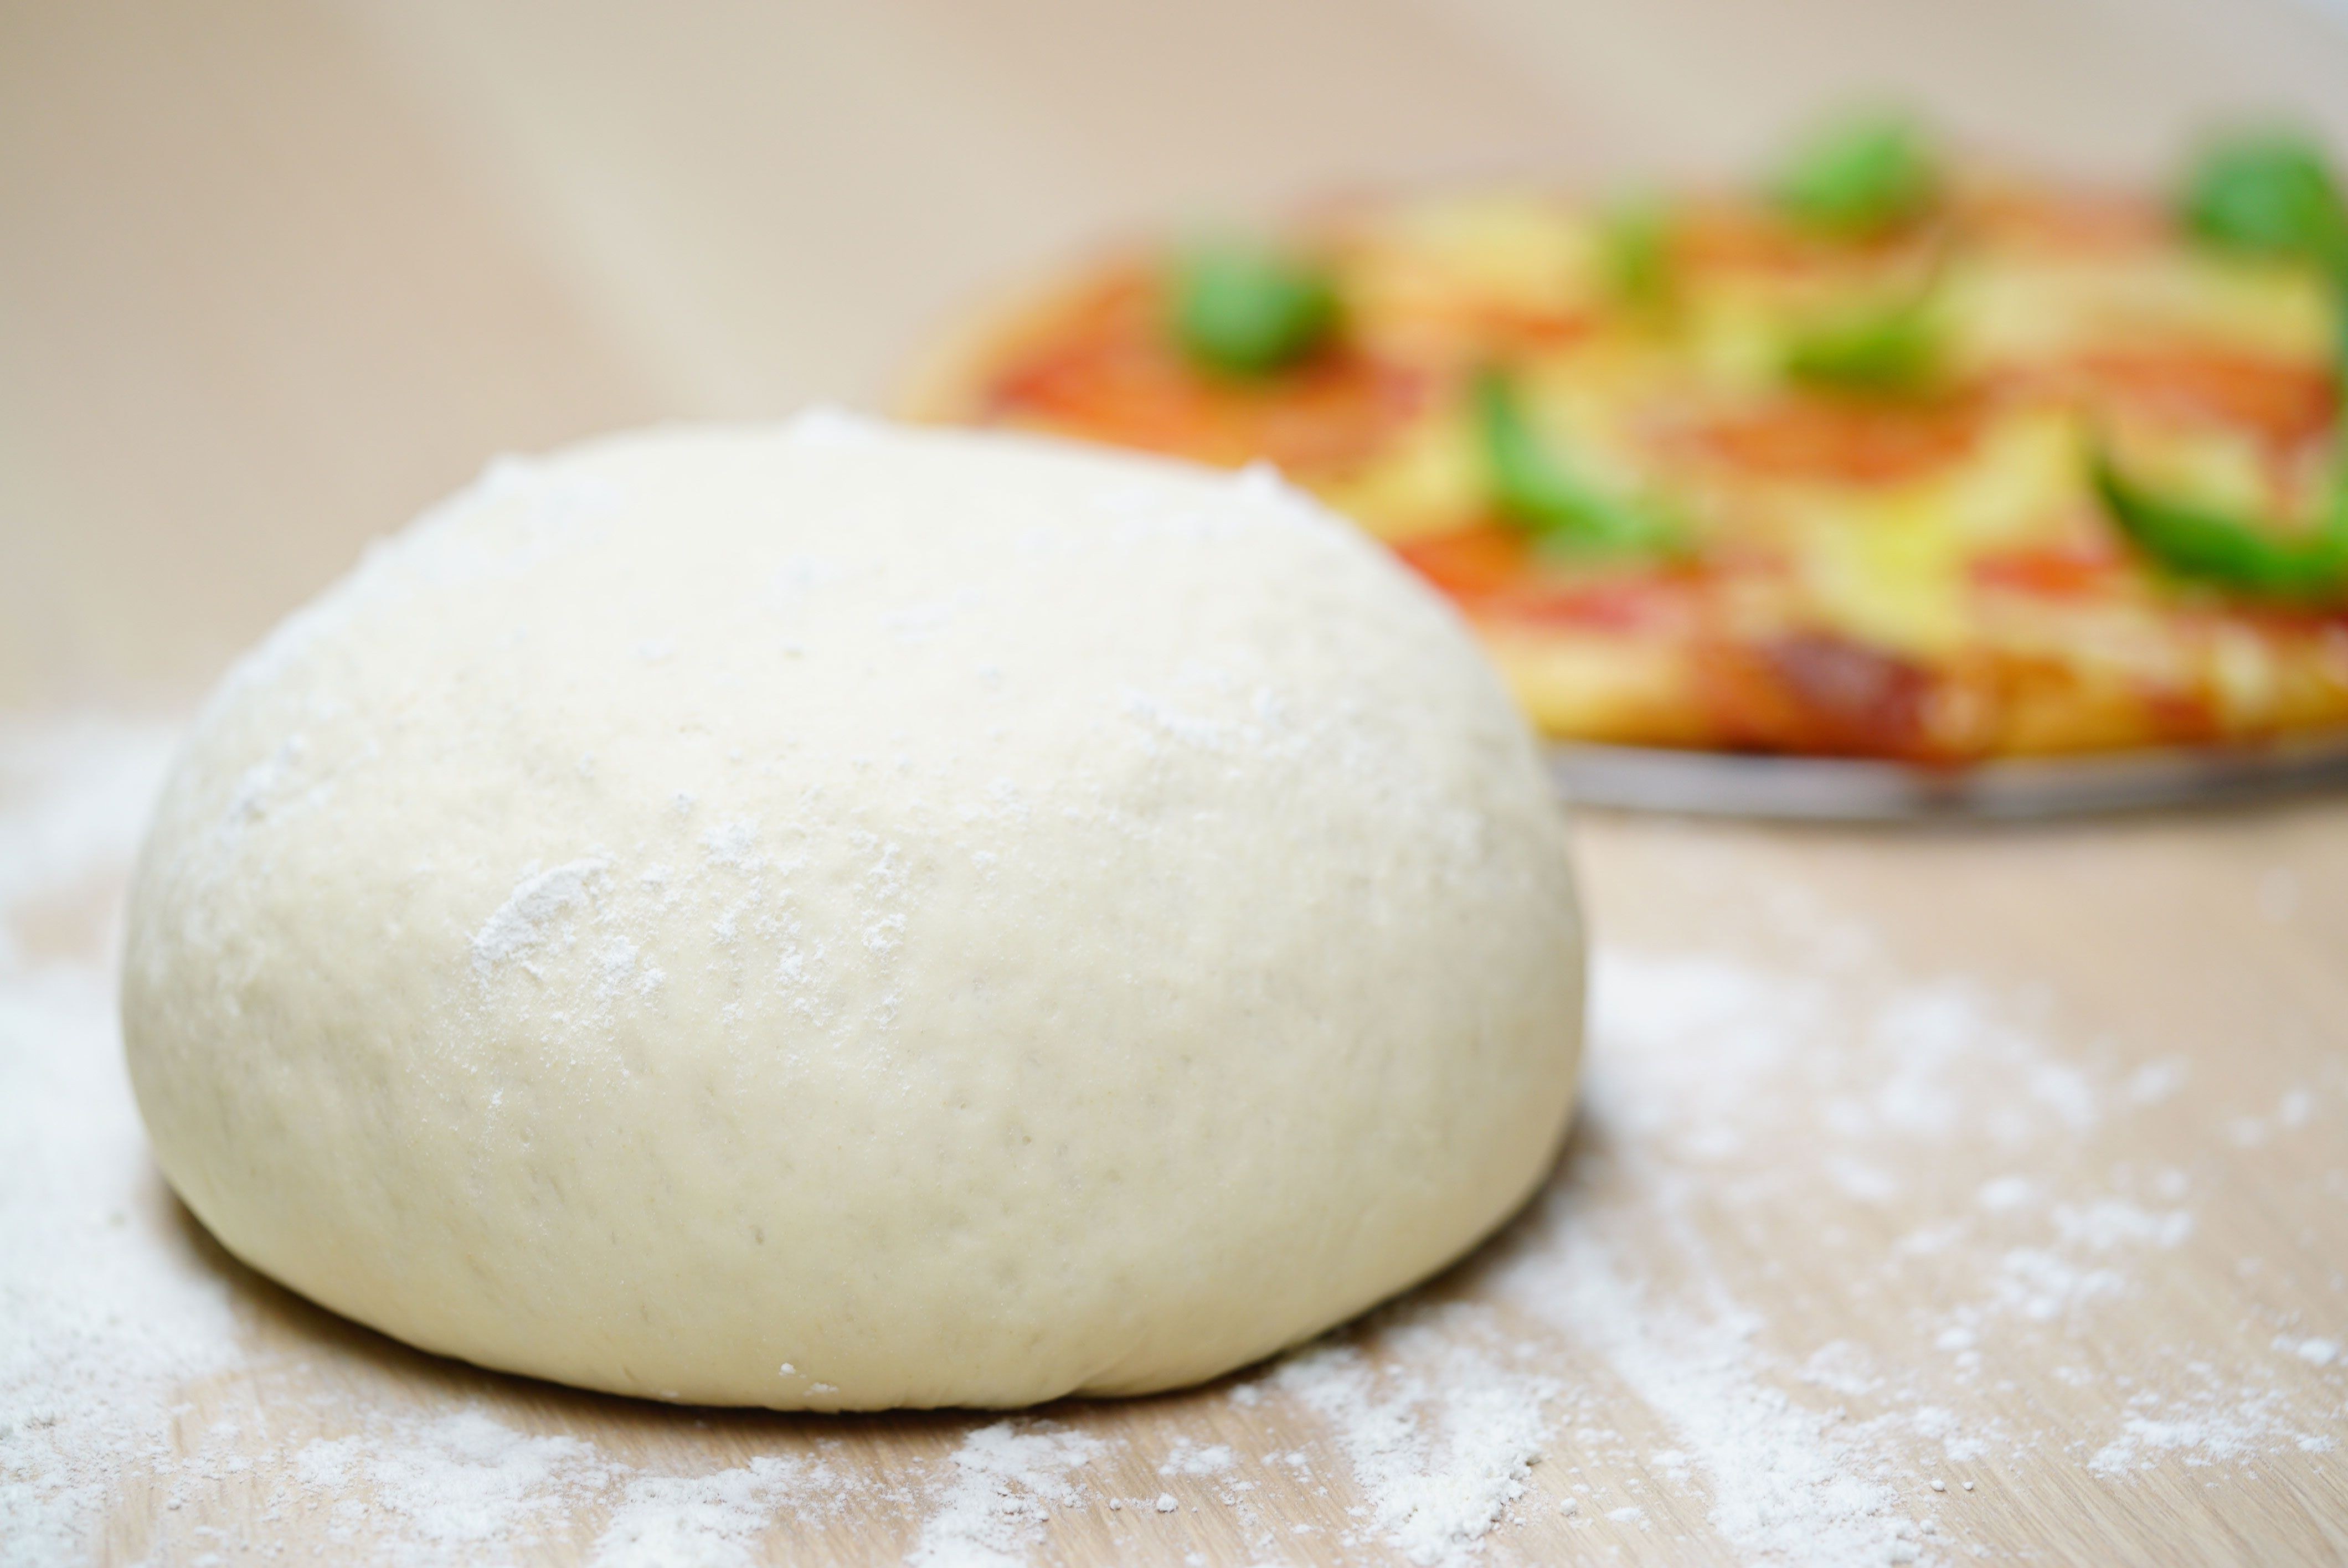 тесто для пиццы как в пиццерии тонкое без дрожжей рецепт вкусное нежное фото 84